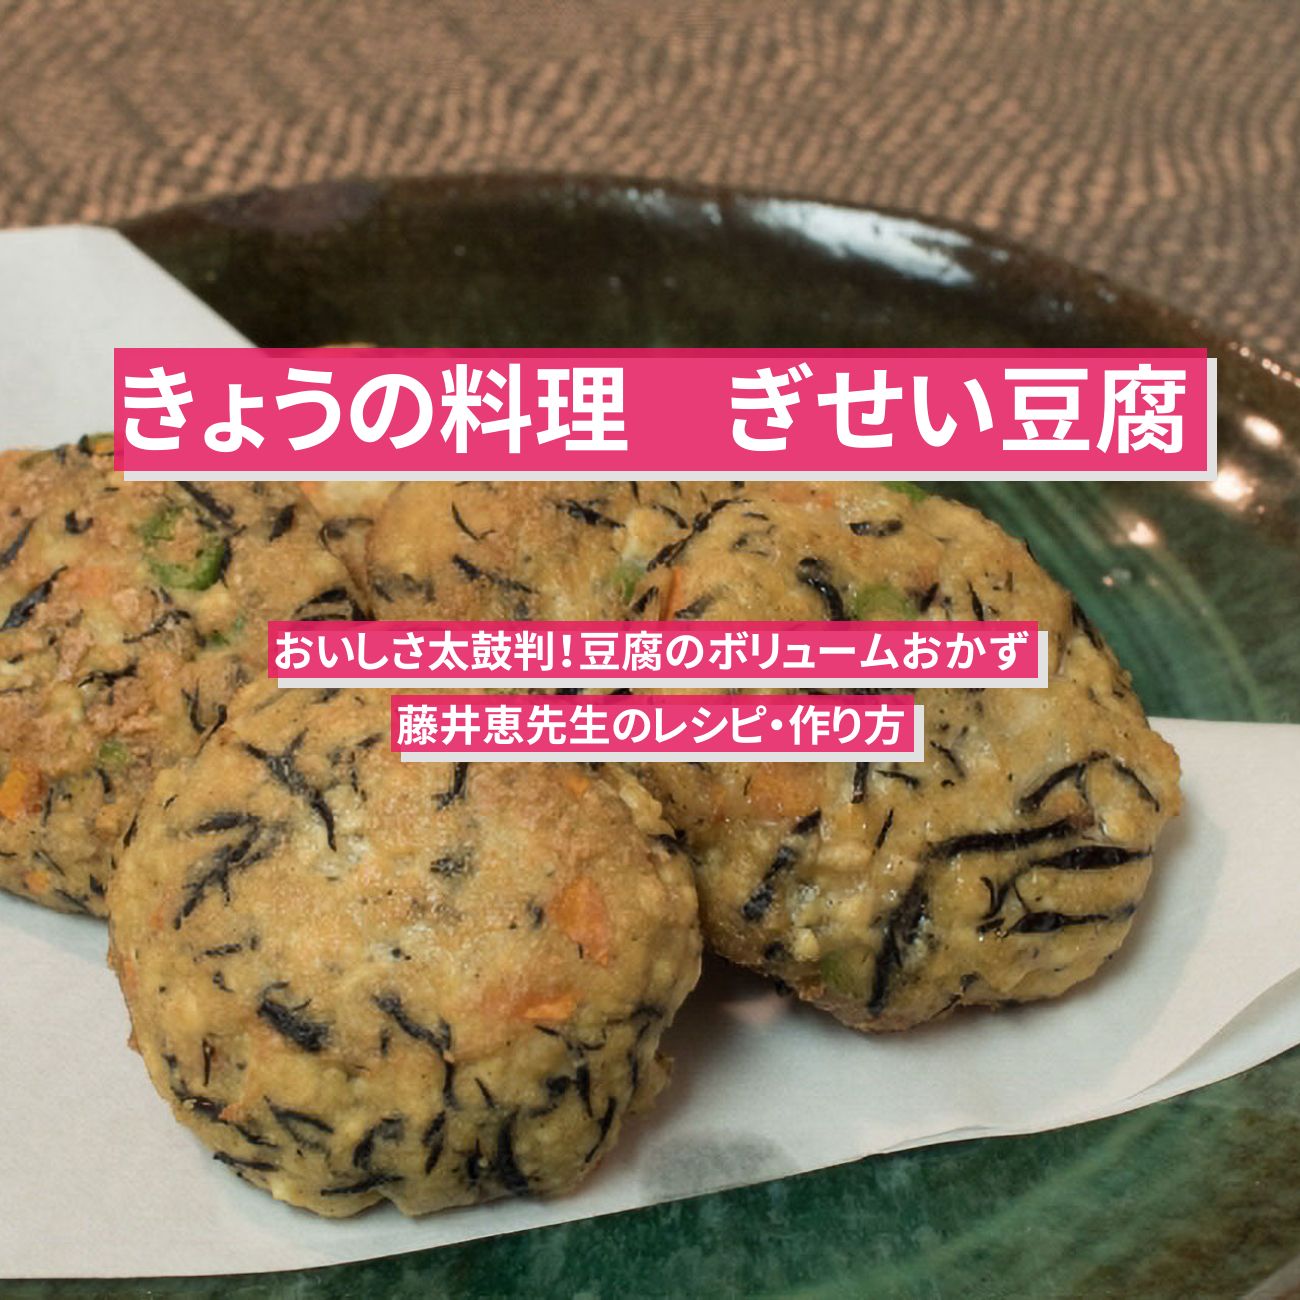 【きょうの料理】『ぎせい豆腐』藤井恵先生のレシピ・作り方